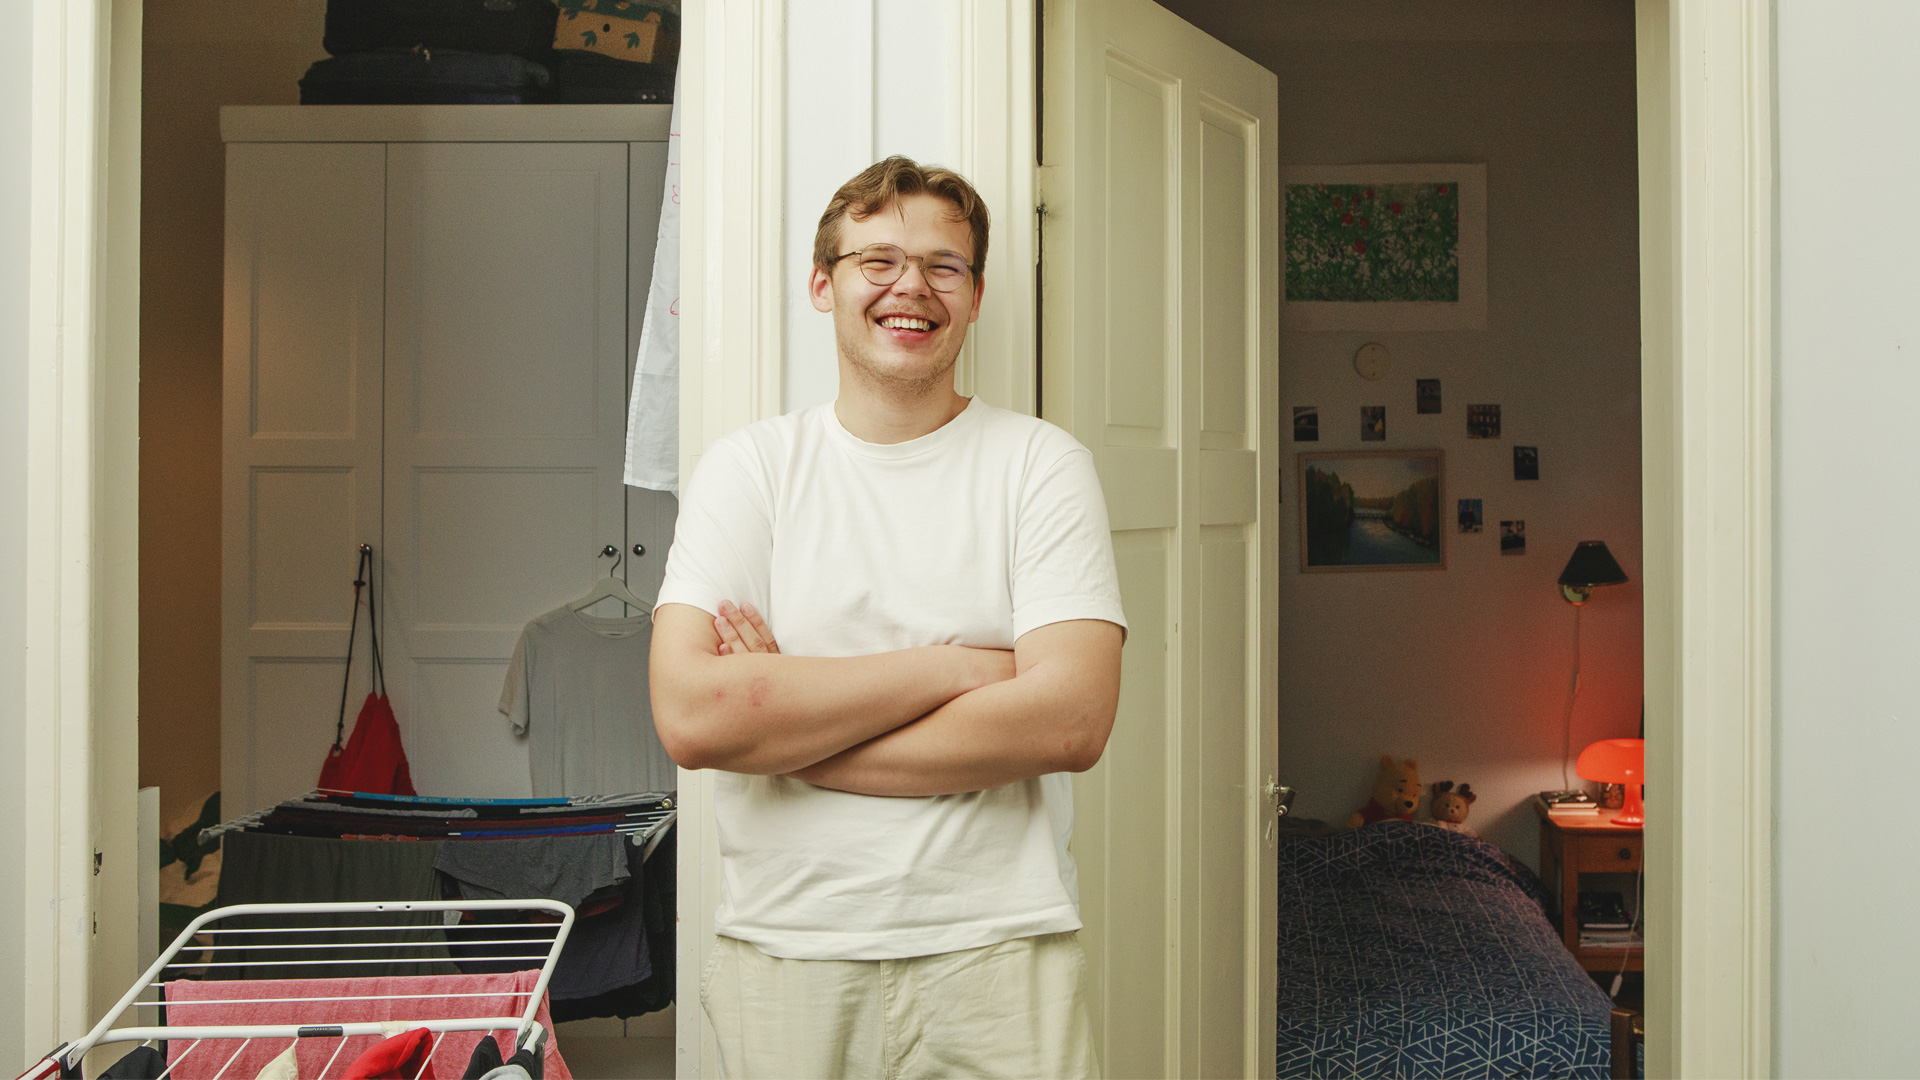 Nuori valkoinen mies nojaa seinään valkoisessa asussa hymyillen, takana kaksi oviaukkoa, joista näkyy kaksi makuuhuonetta.